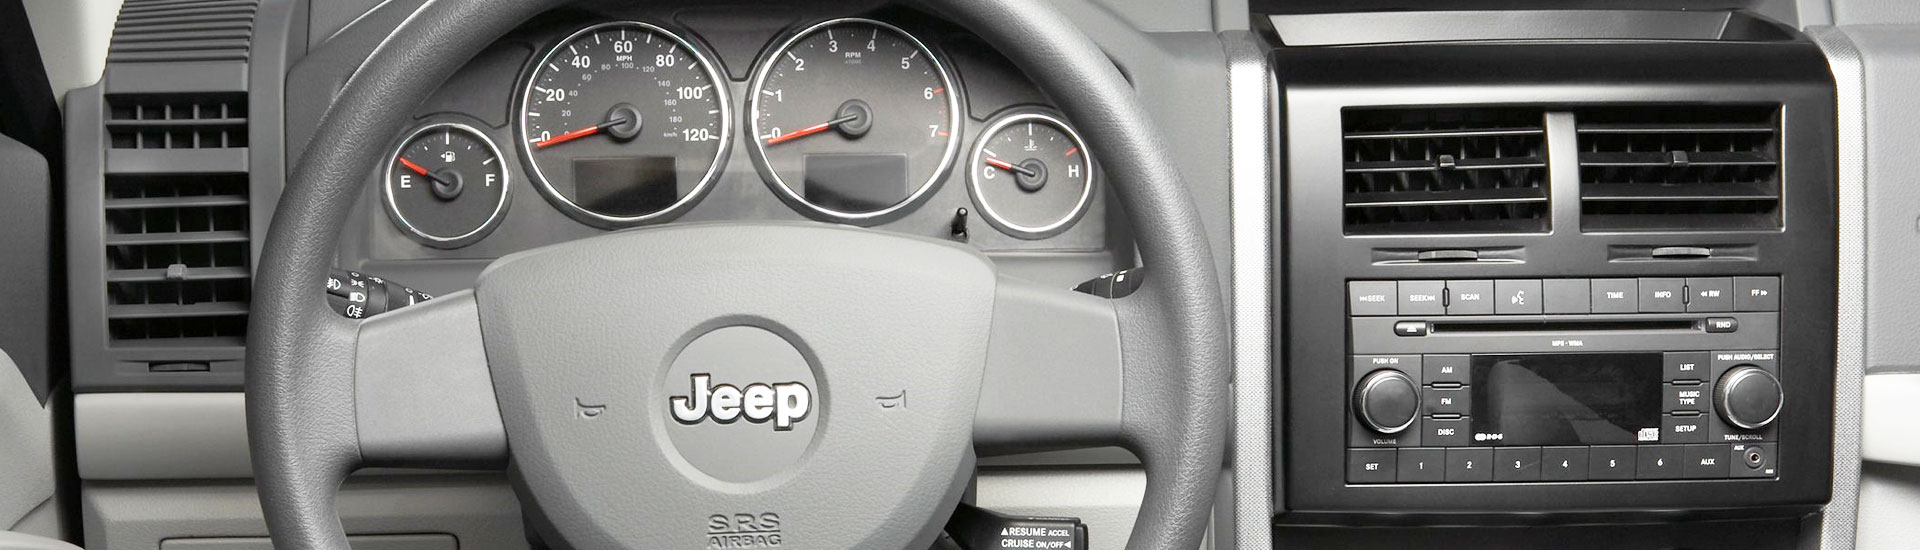 Jeep Liberty Custom Dash Kits